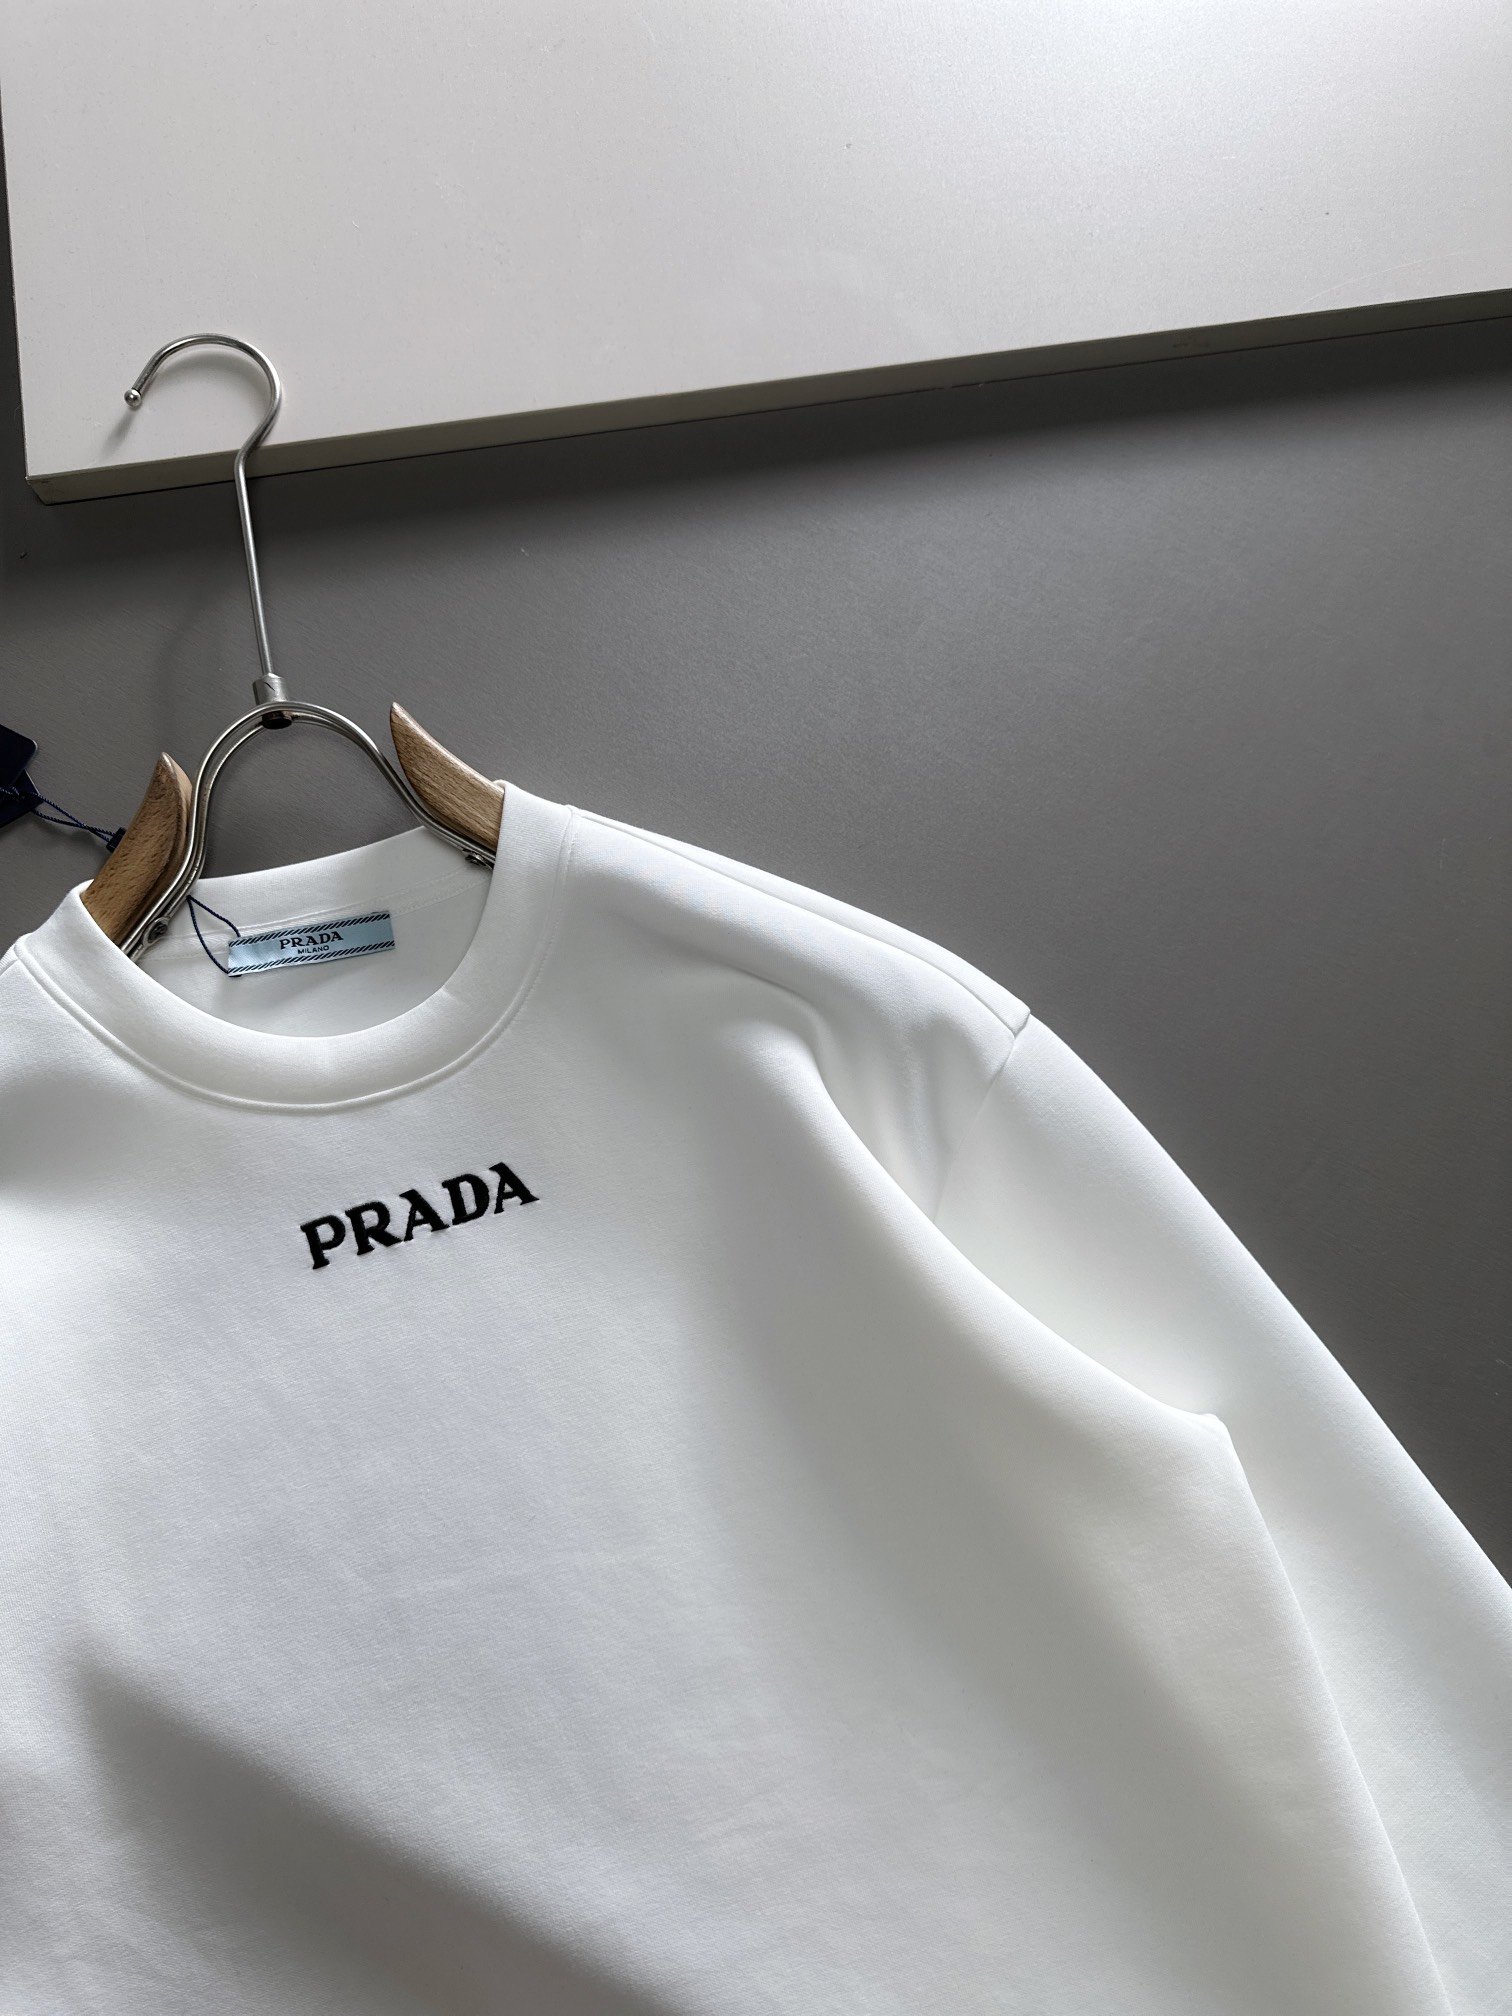 普拉达2023最新款太空棉卫衣独家发售！原版复刻独家设计超强工艺！极其奢华！版型超赞！尺码S-XL